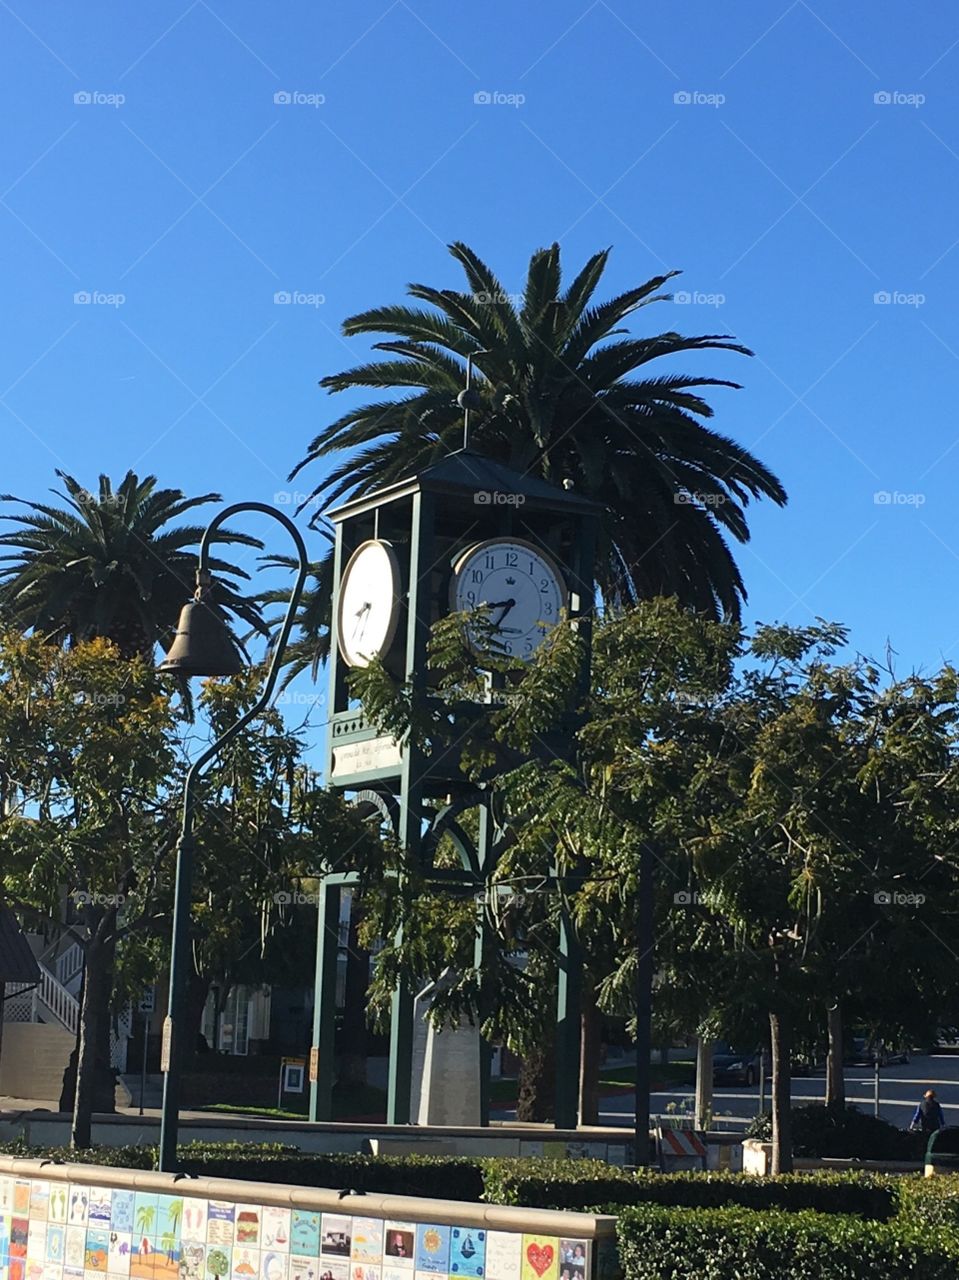 El Camino Real Clock